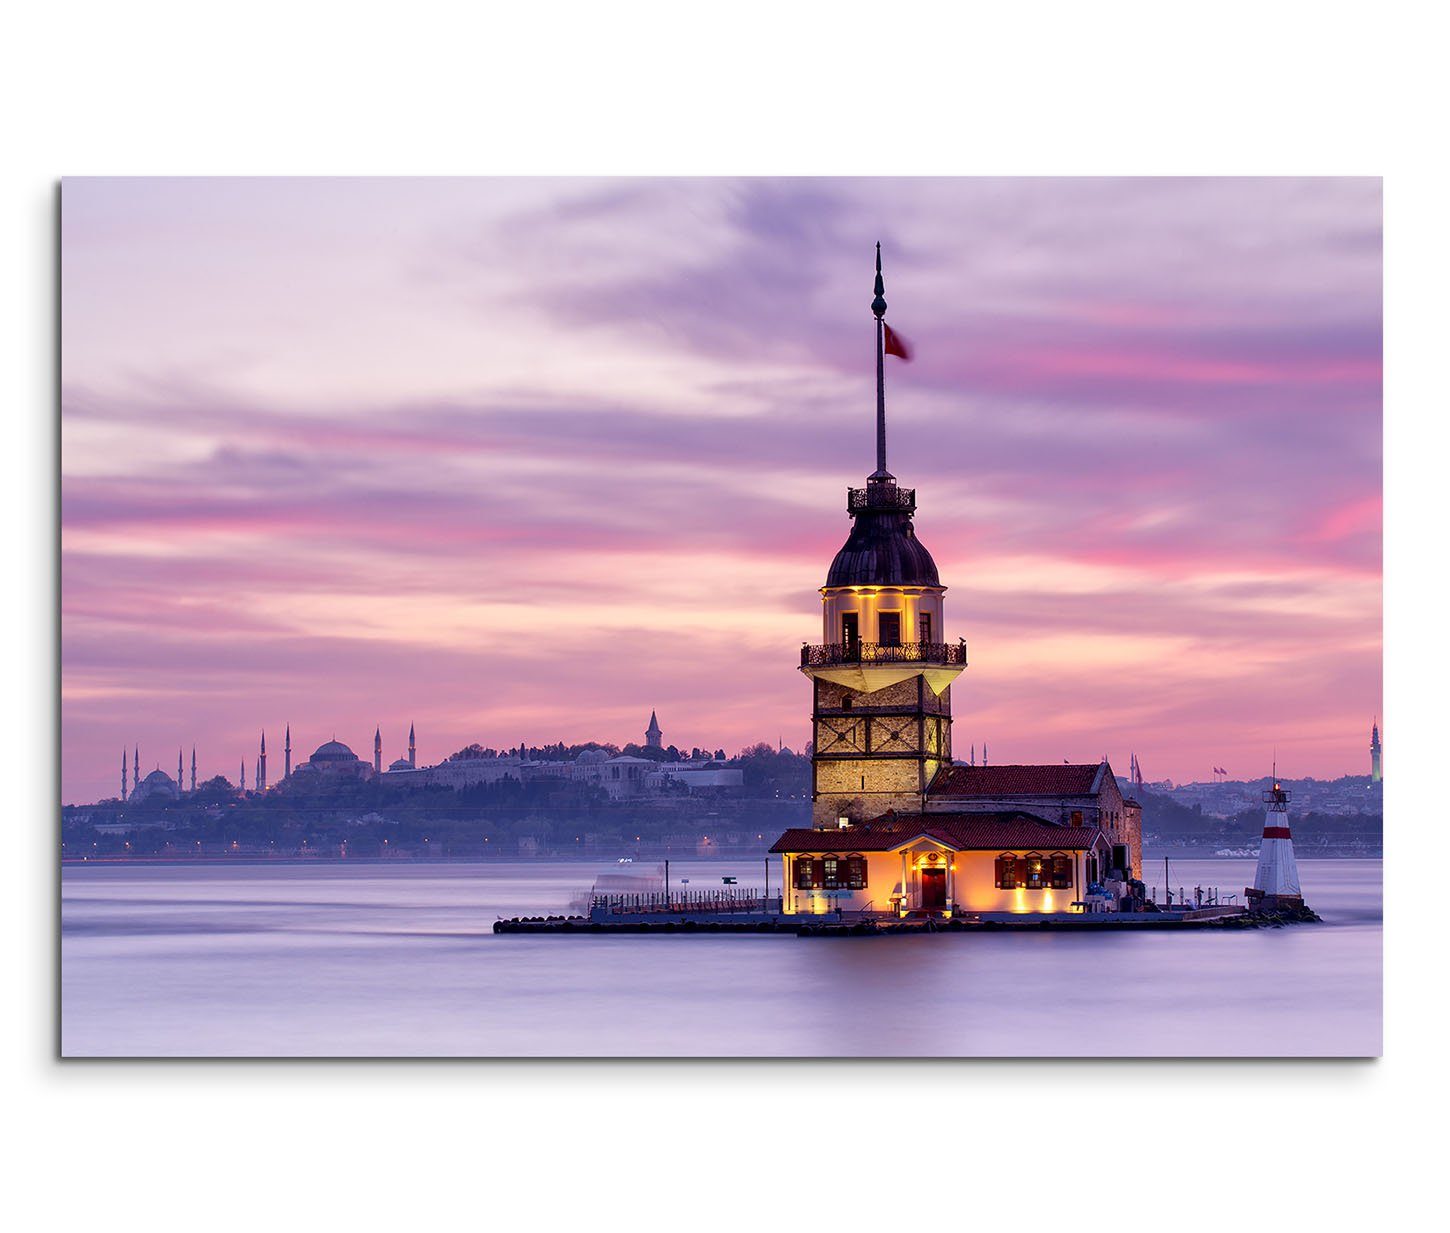 Sinus Art Leinwandbild 120x80cm Wandbild Istanbul Bosporus Jungfrauenturm